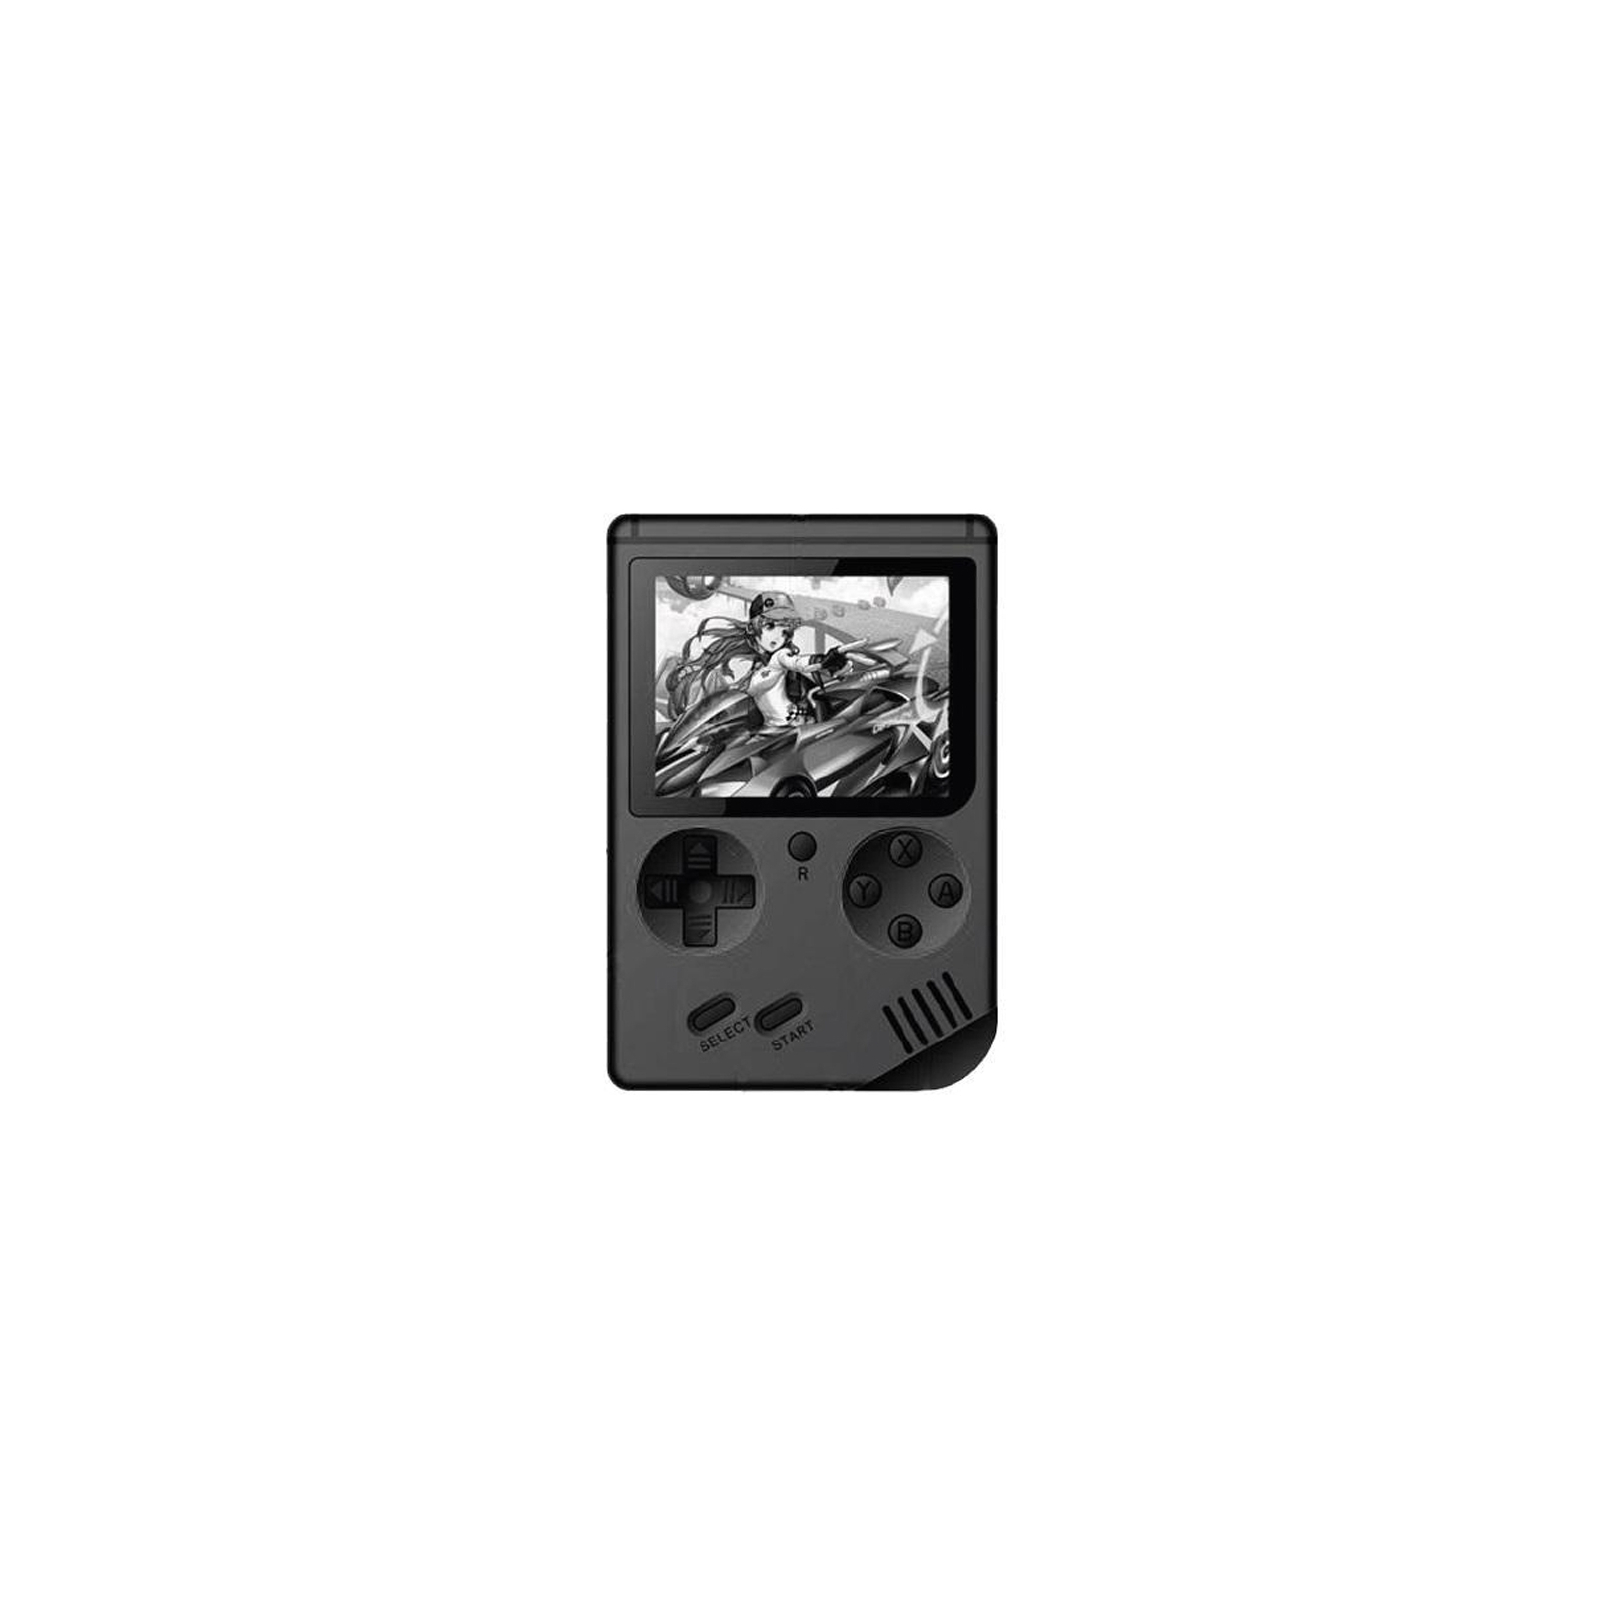 Интерактивная игрушка XoKo игровая консоль Hey Boy черная (XOKO HB-BK)